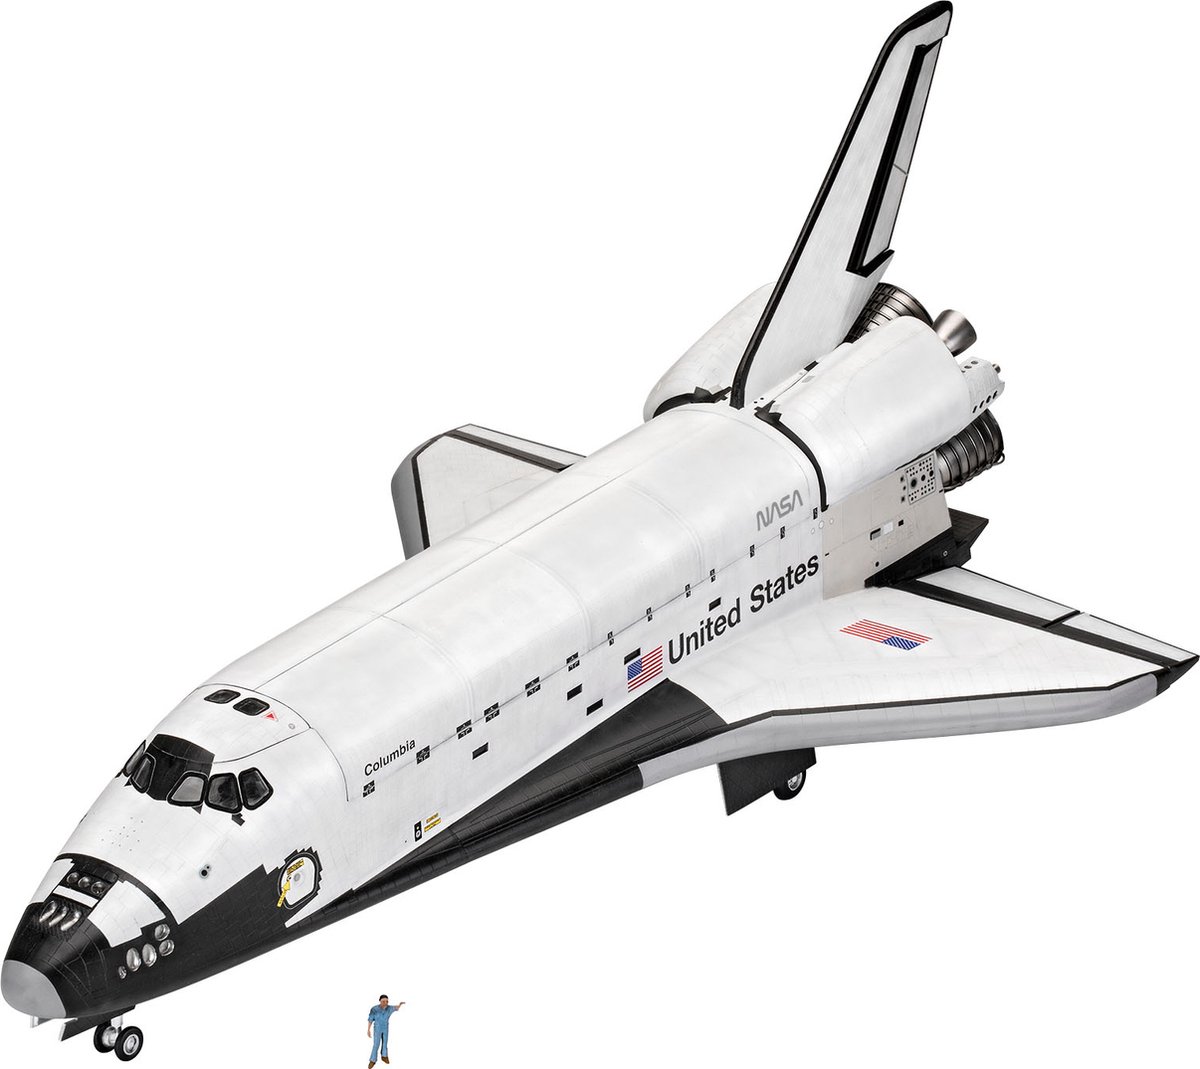 Revell modelbouwset Space Shuttle 48,9 x 22 cm wit 111 delig